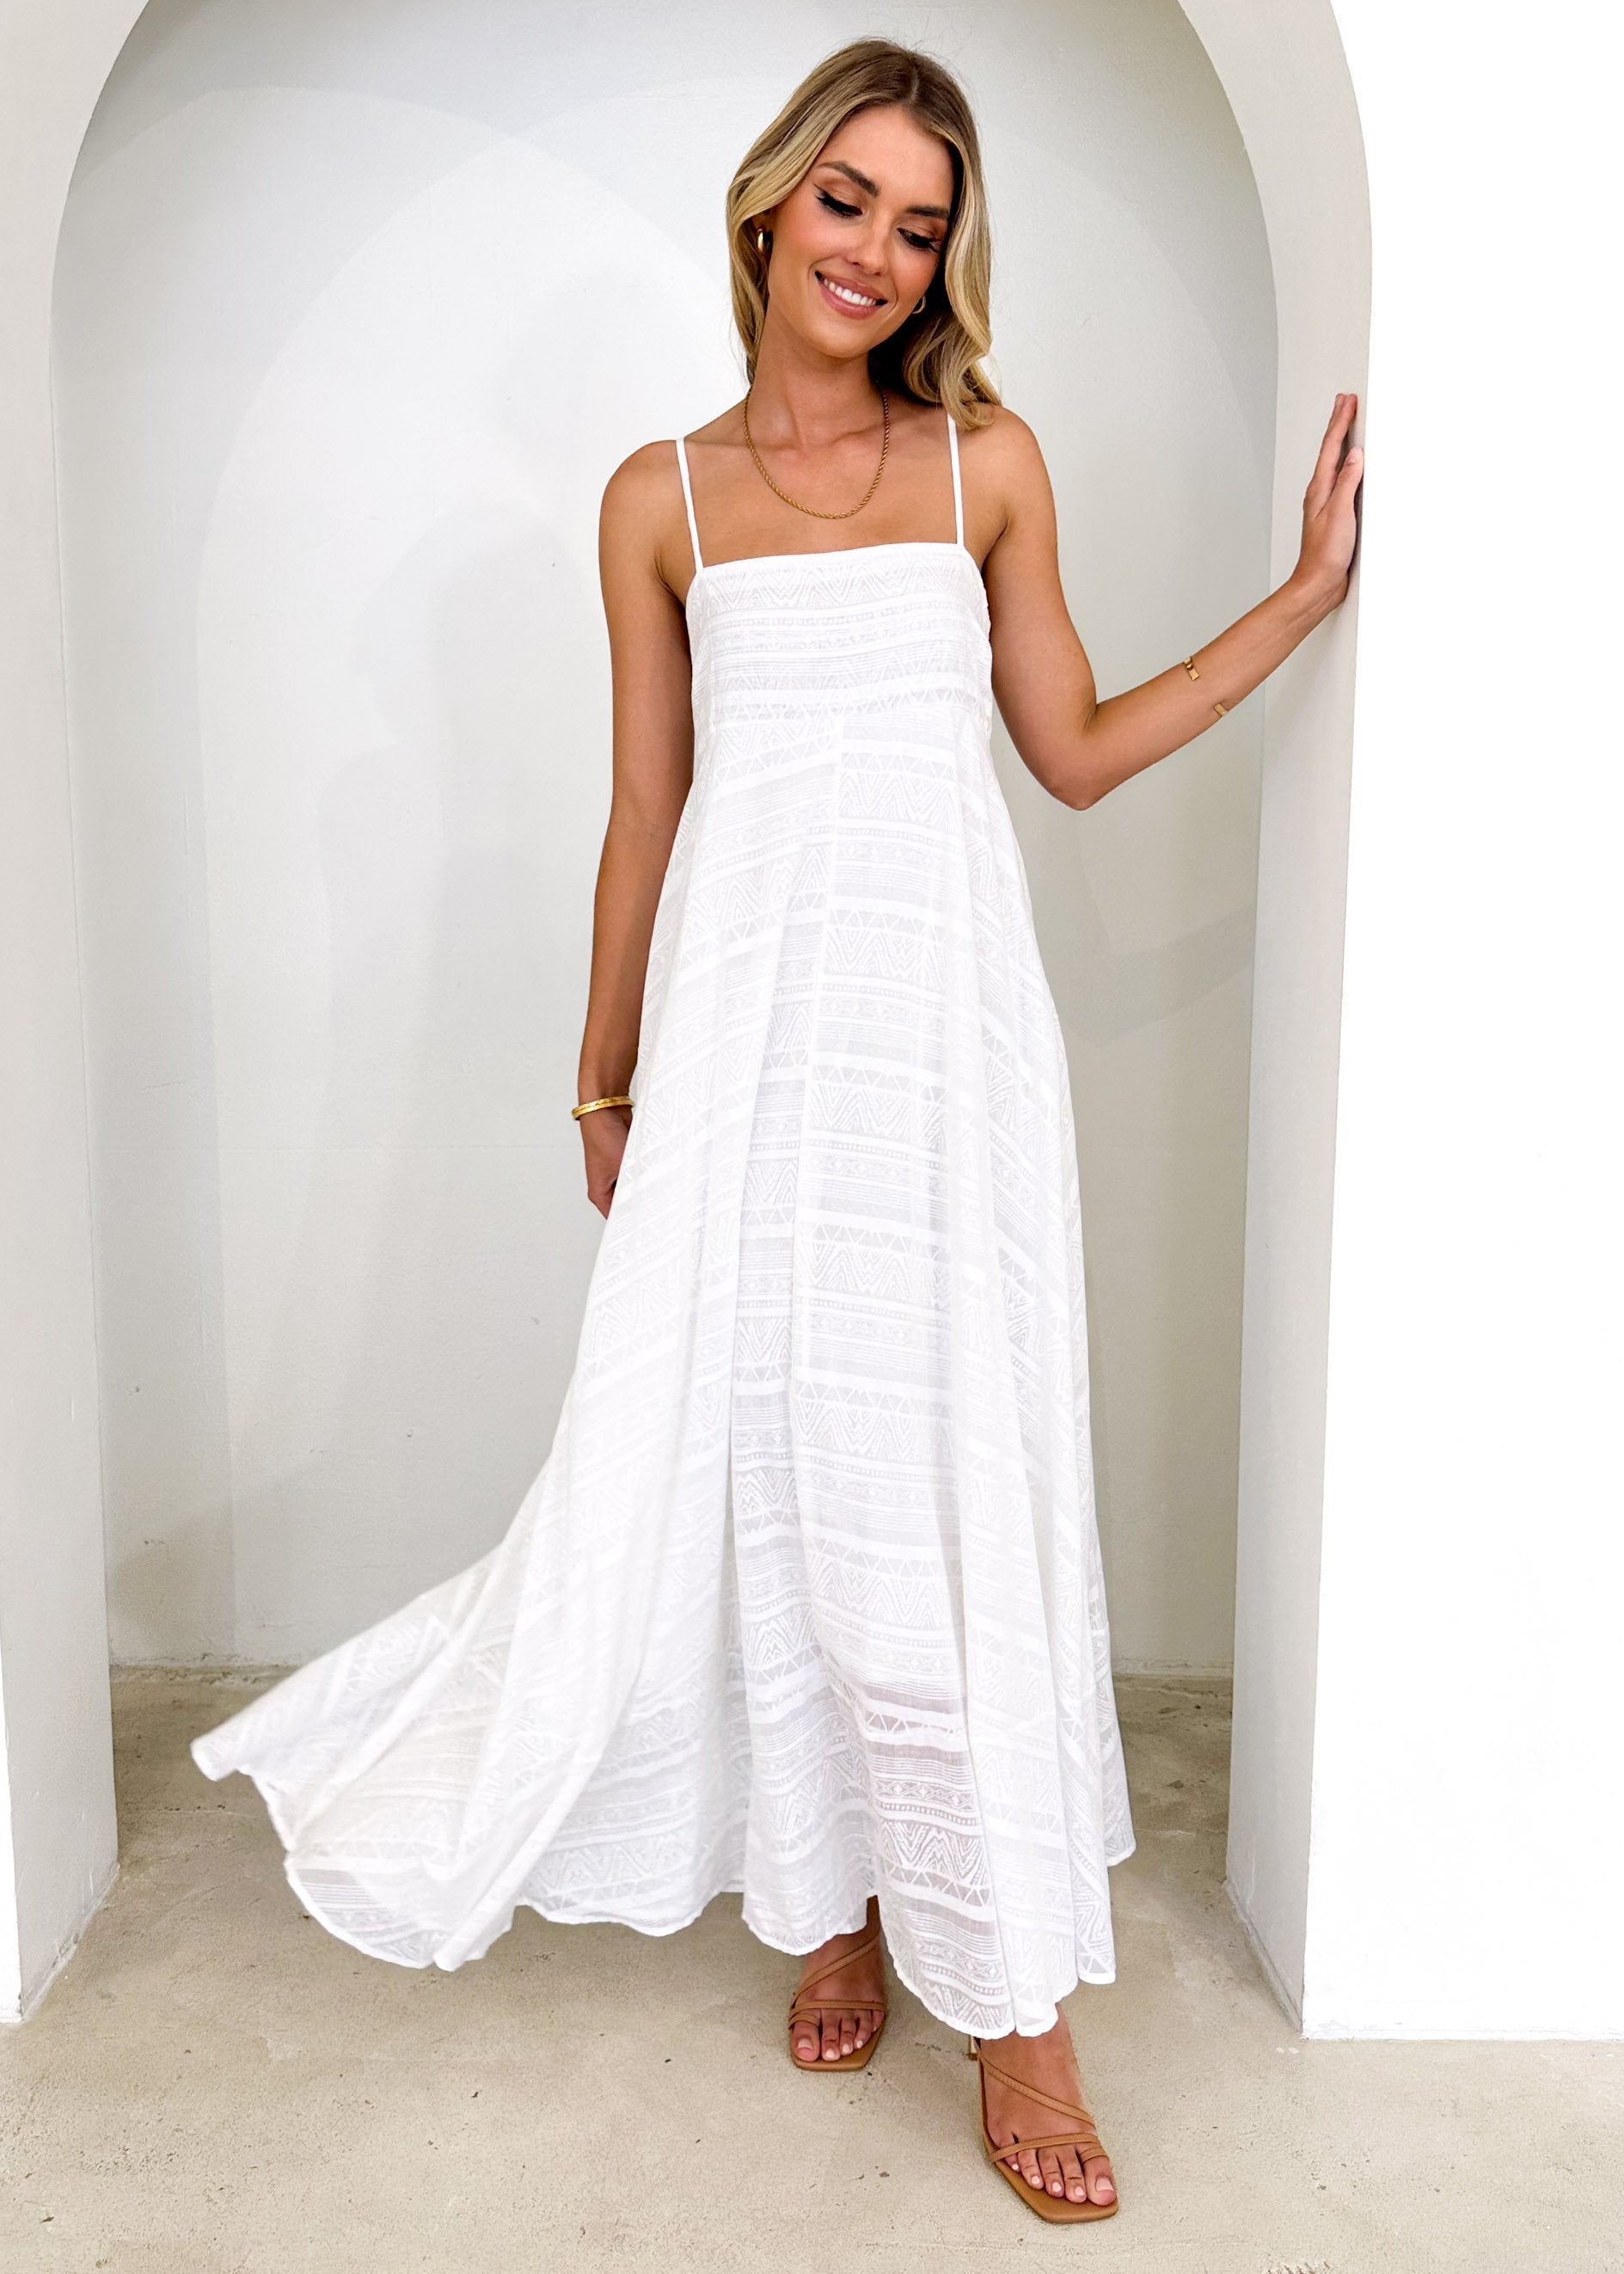 Renta Midi Dress - Off White